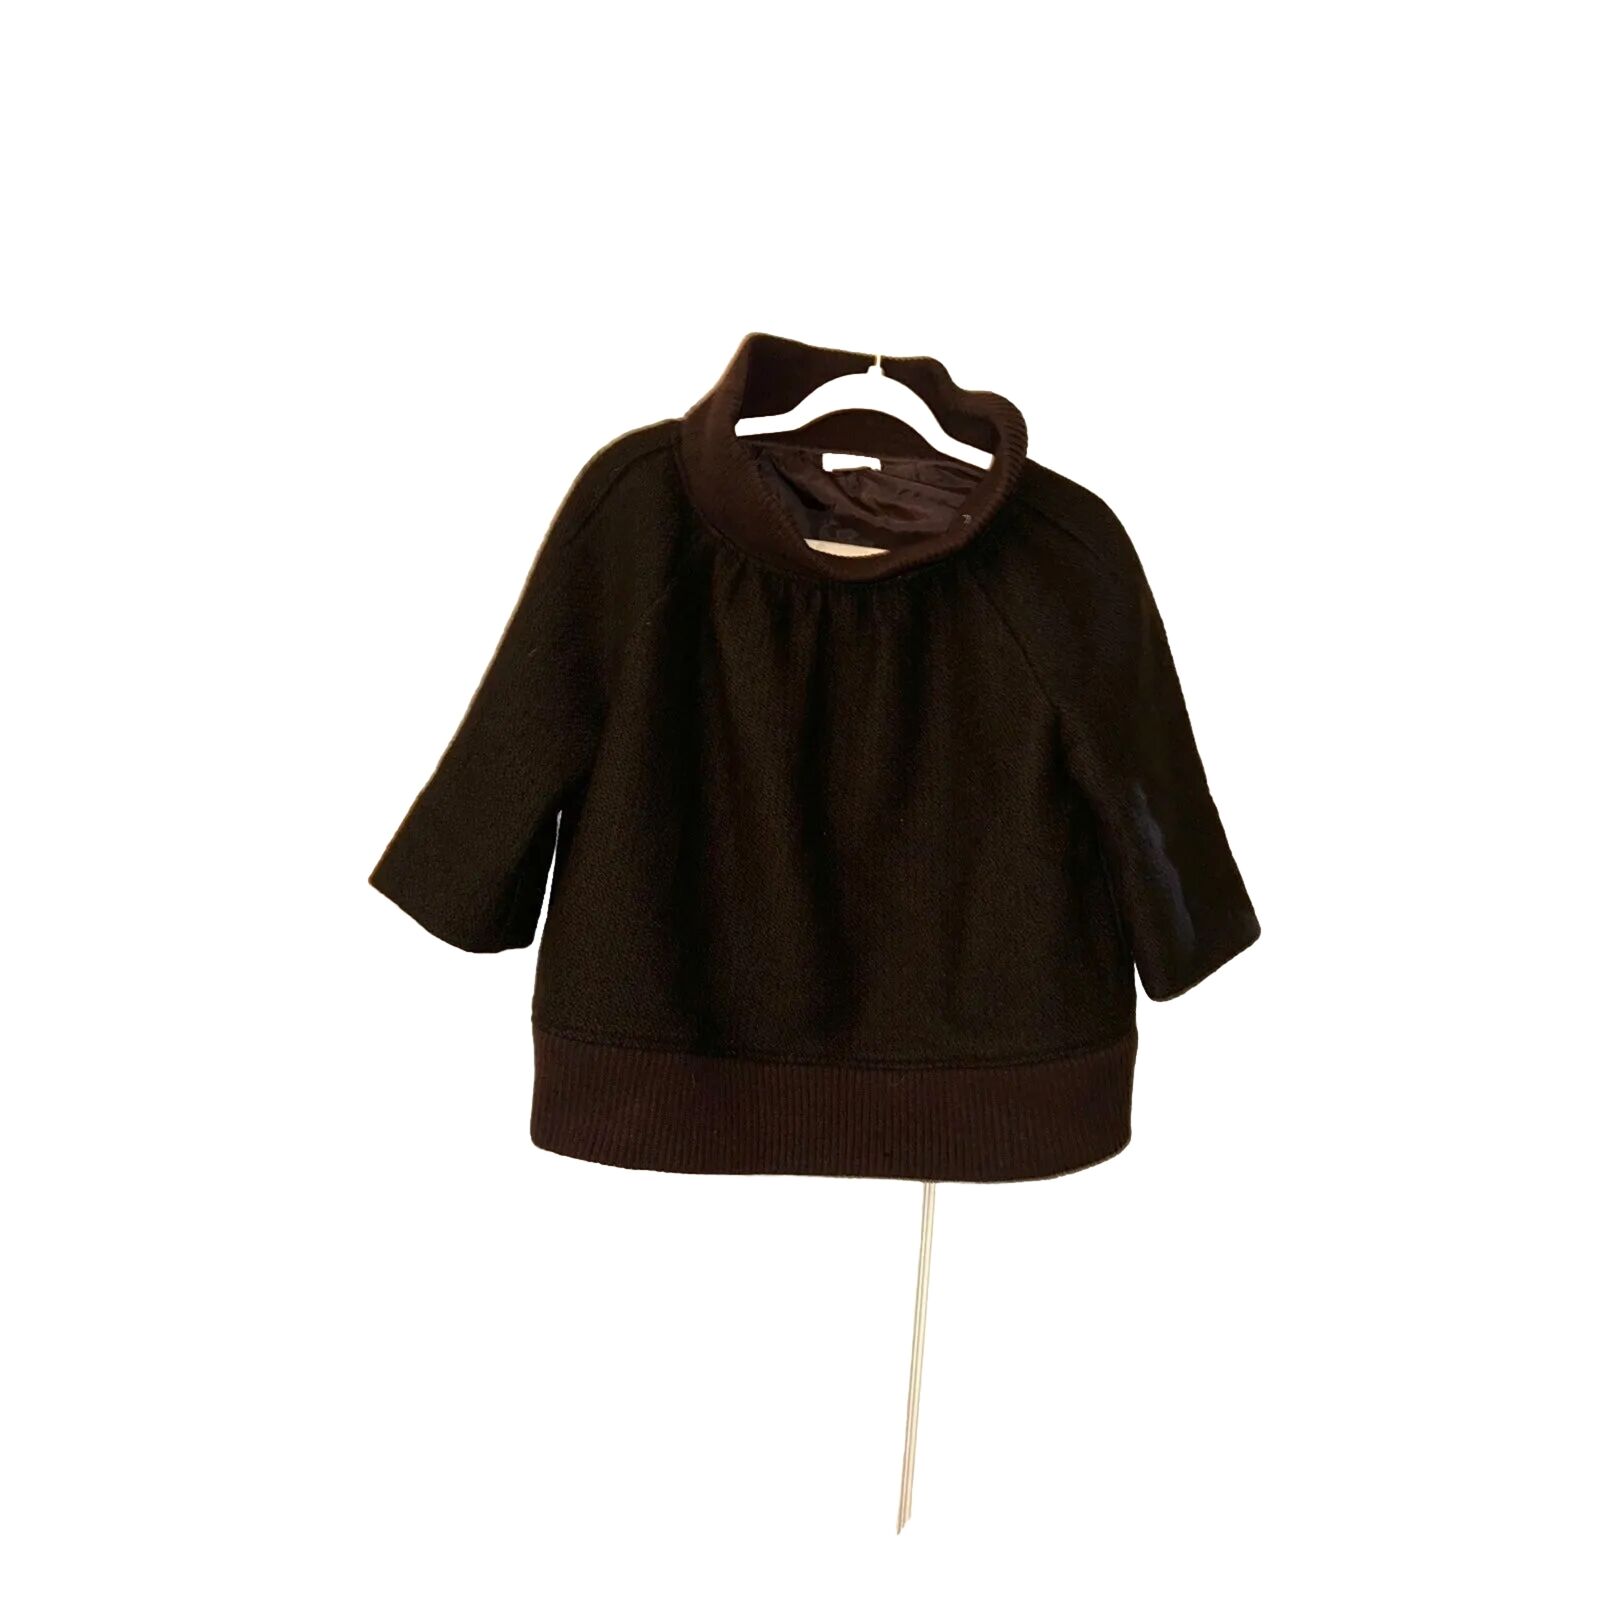 Women’s dries van noten wool mock neck top or jacket size 40